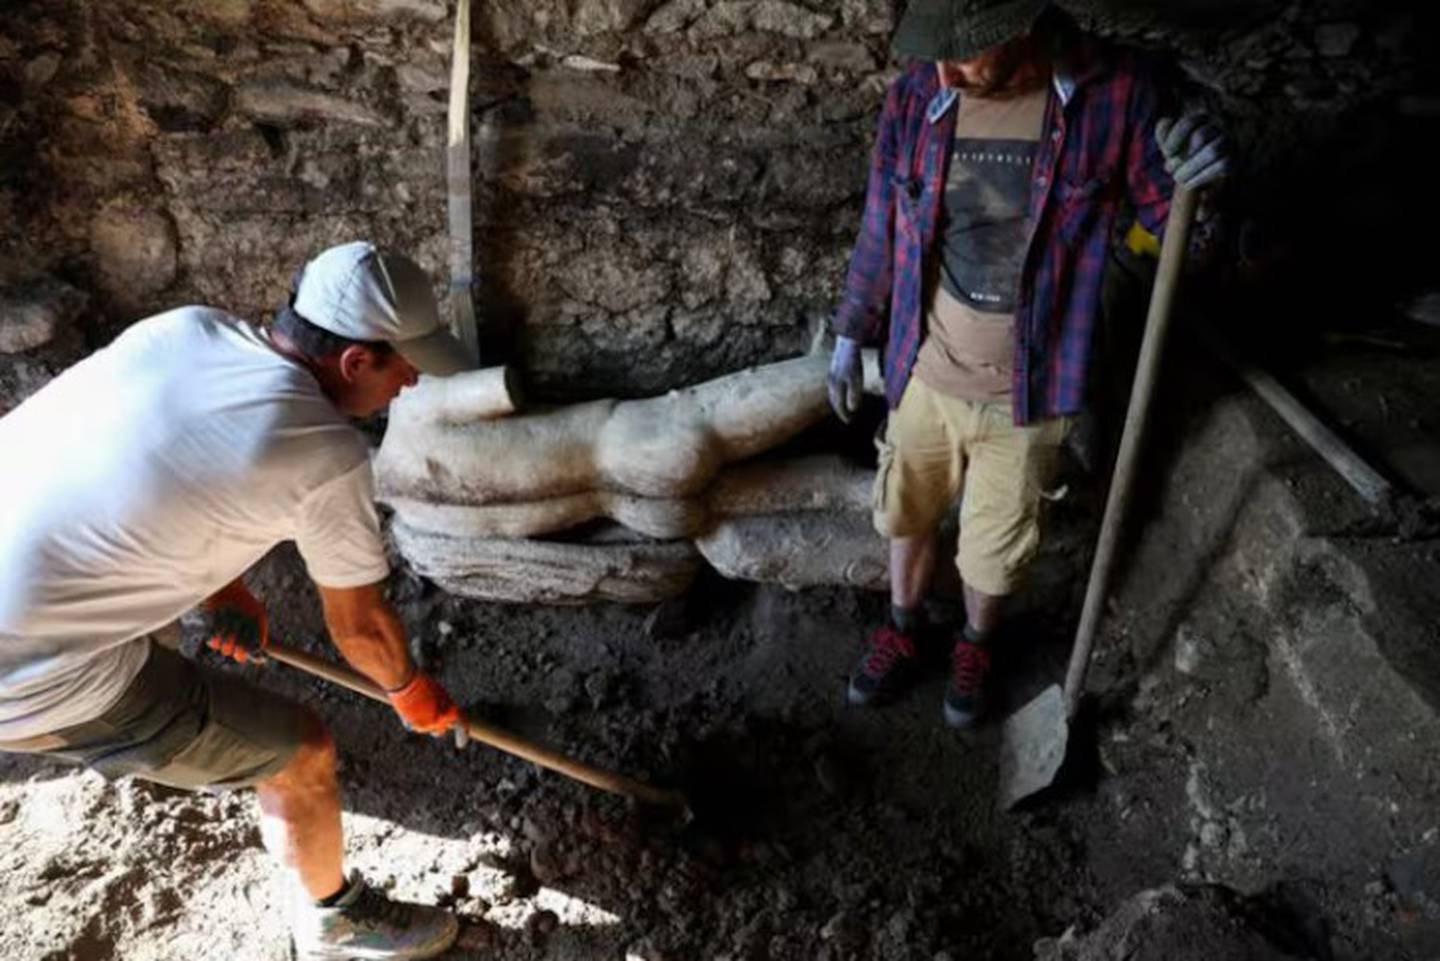 Los arqueólogos observan una estatua de mármol descubierta en la antigua ciudad de Heraclea Sinitica.